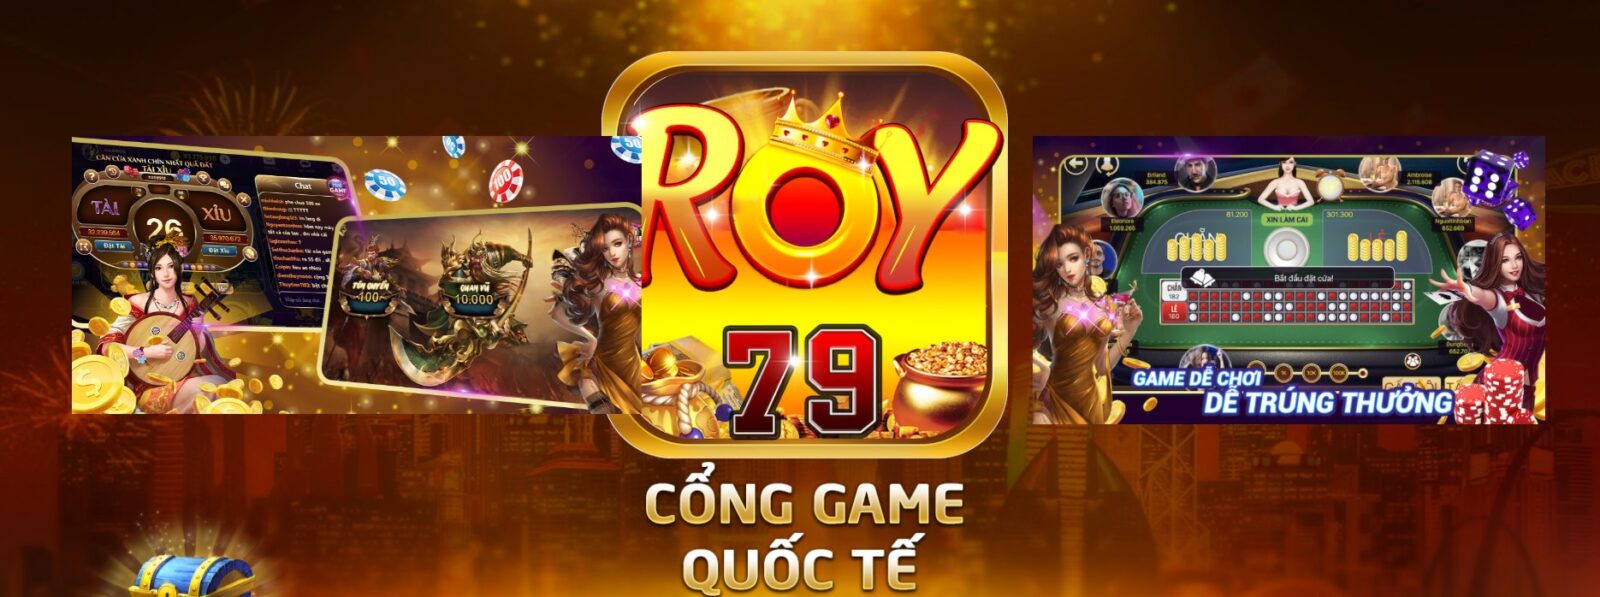 Roy79 - Cổng game siêu cường với sức hút mạnh mẽ